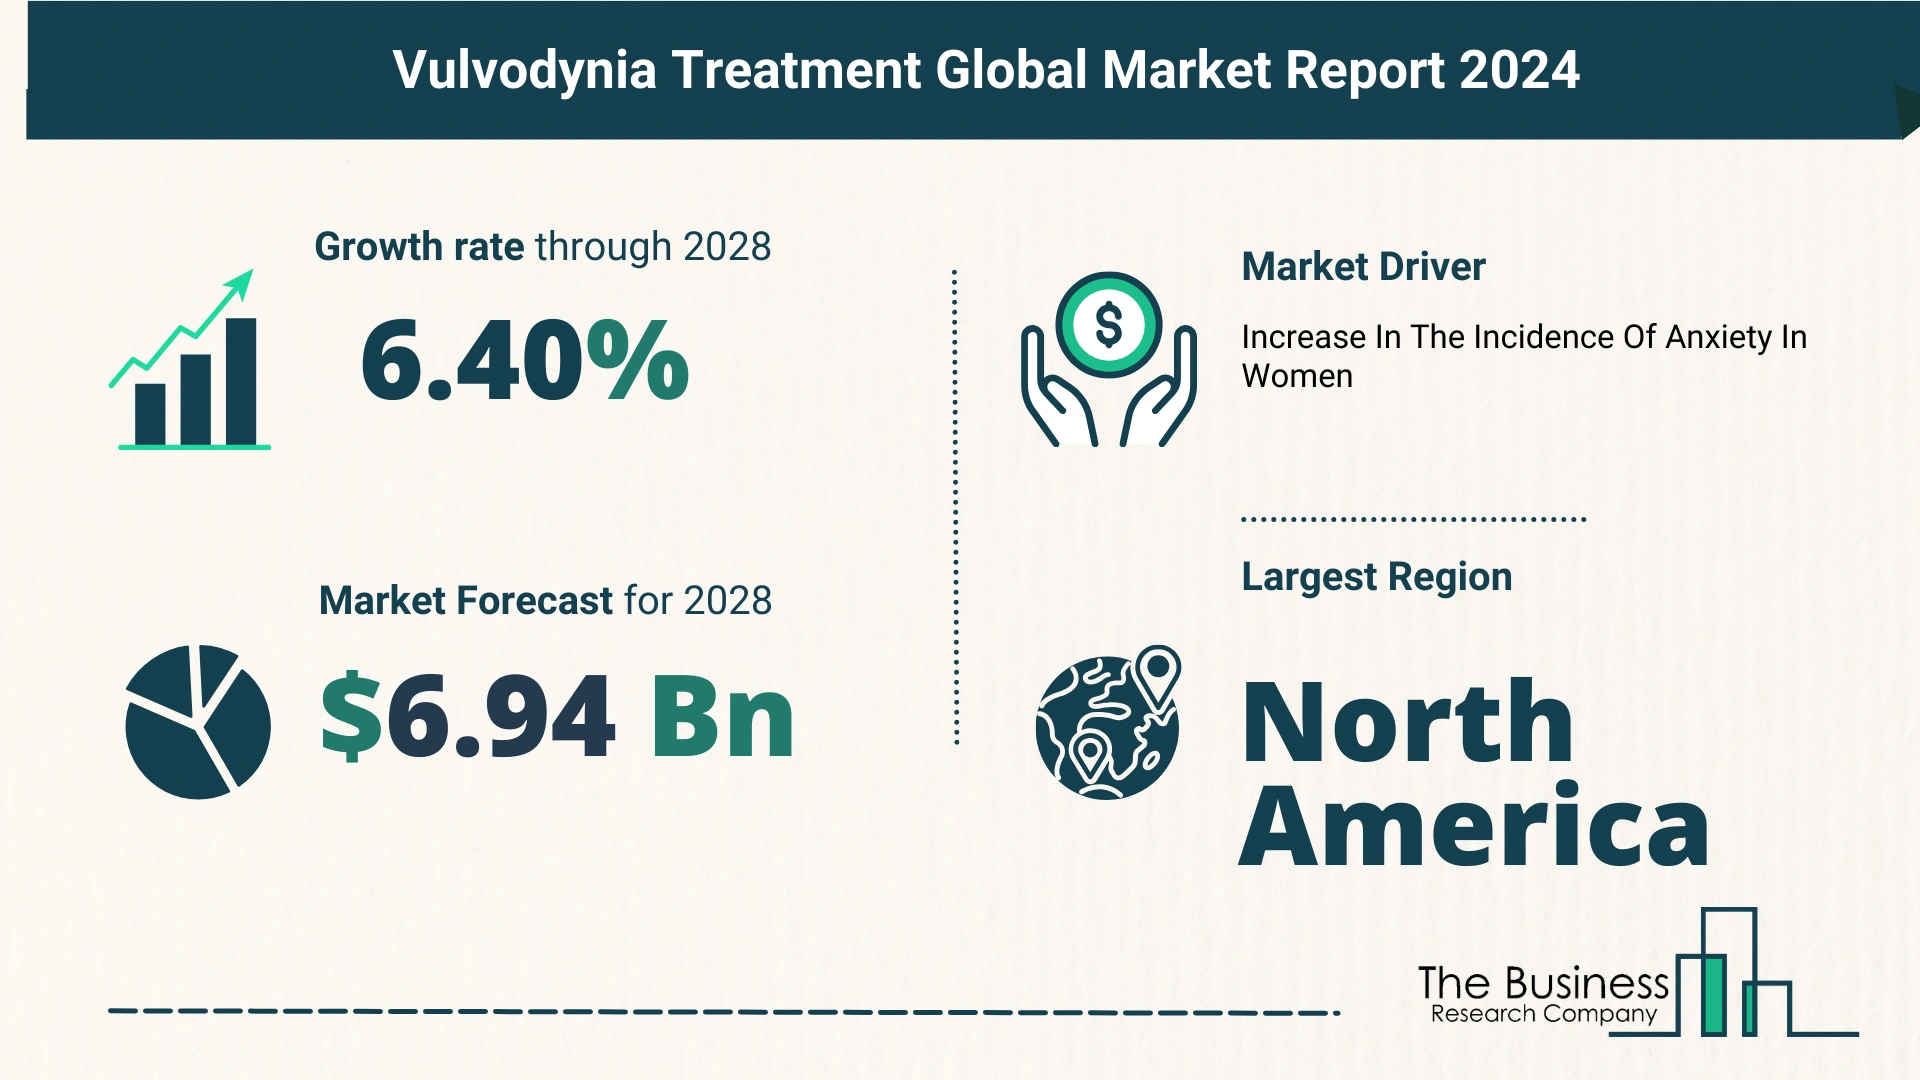 Global Vulvodynia Treatment Market